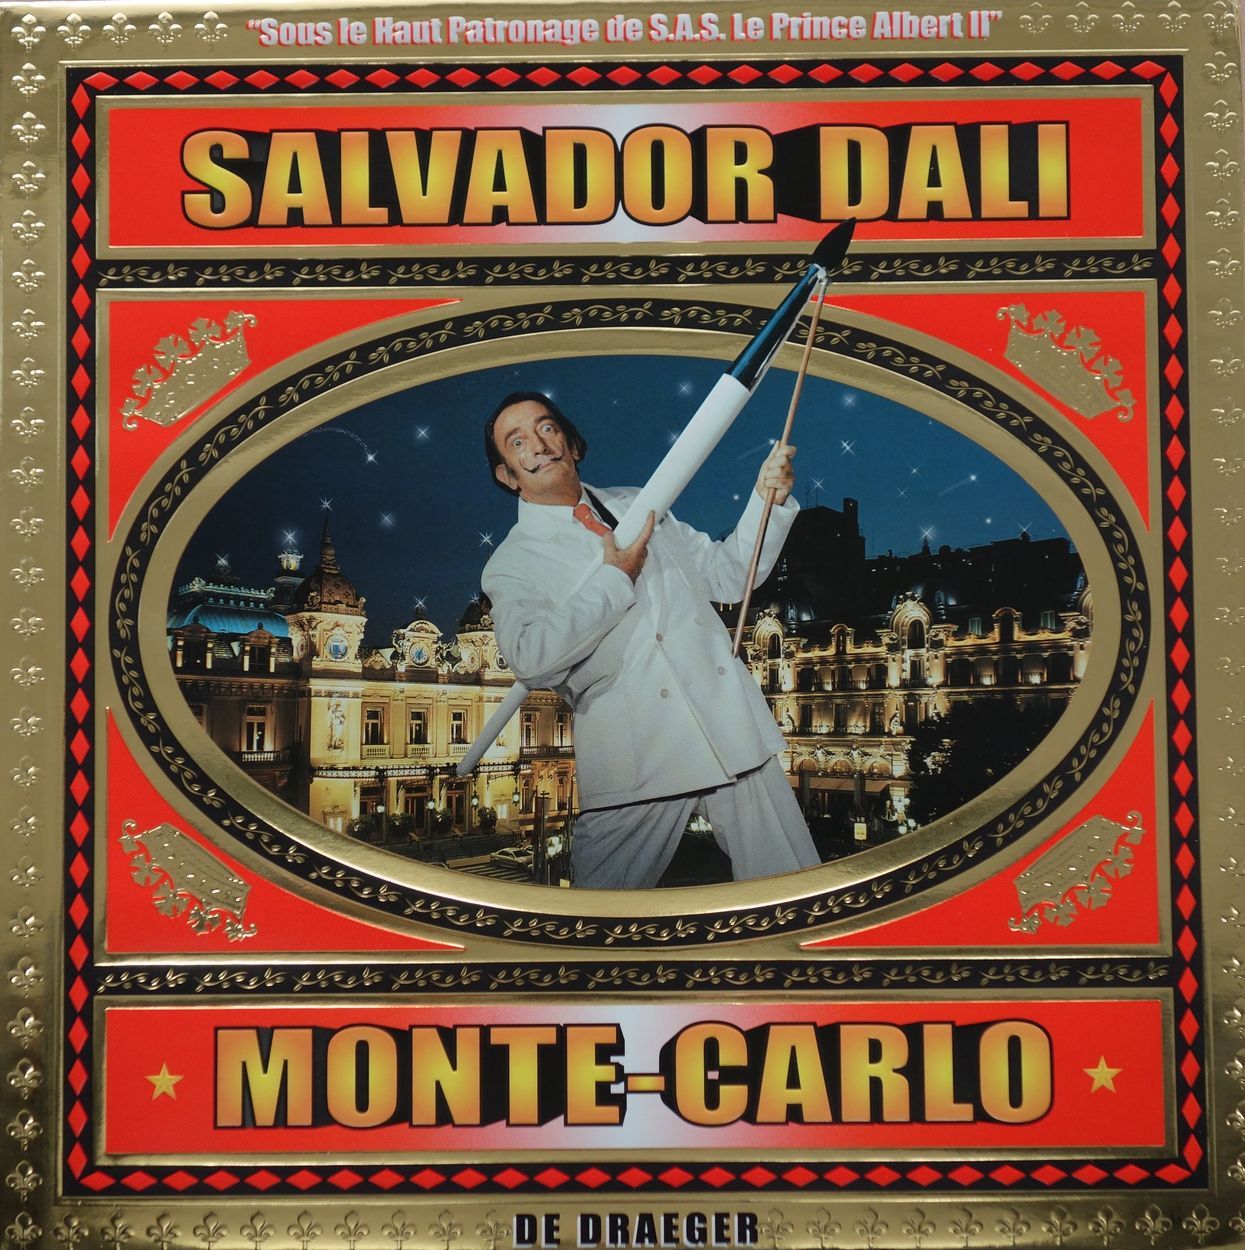 Null Salvador Dalí

El álbum / Monte-Carlo de Draeger

Edición Draeger 2005

Apr&hellip;